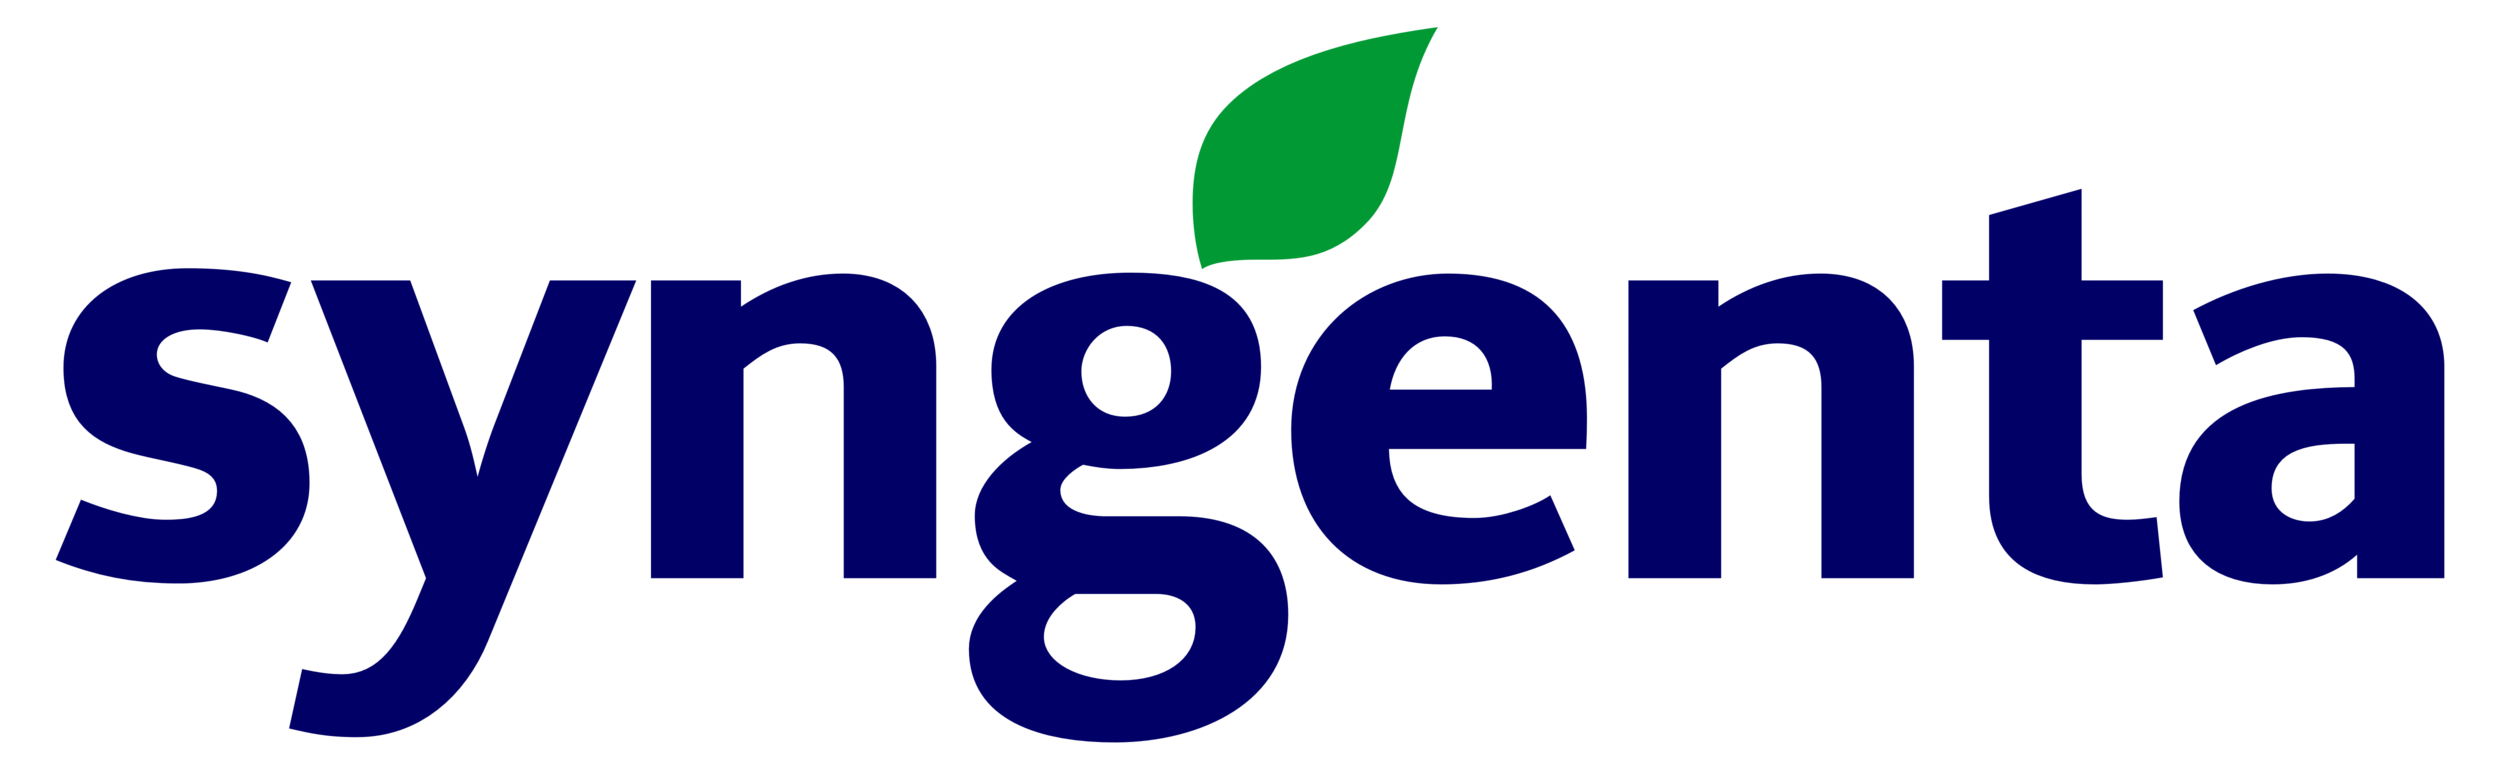 Syngenta_logo.png